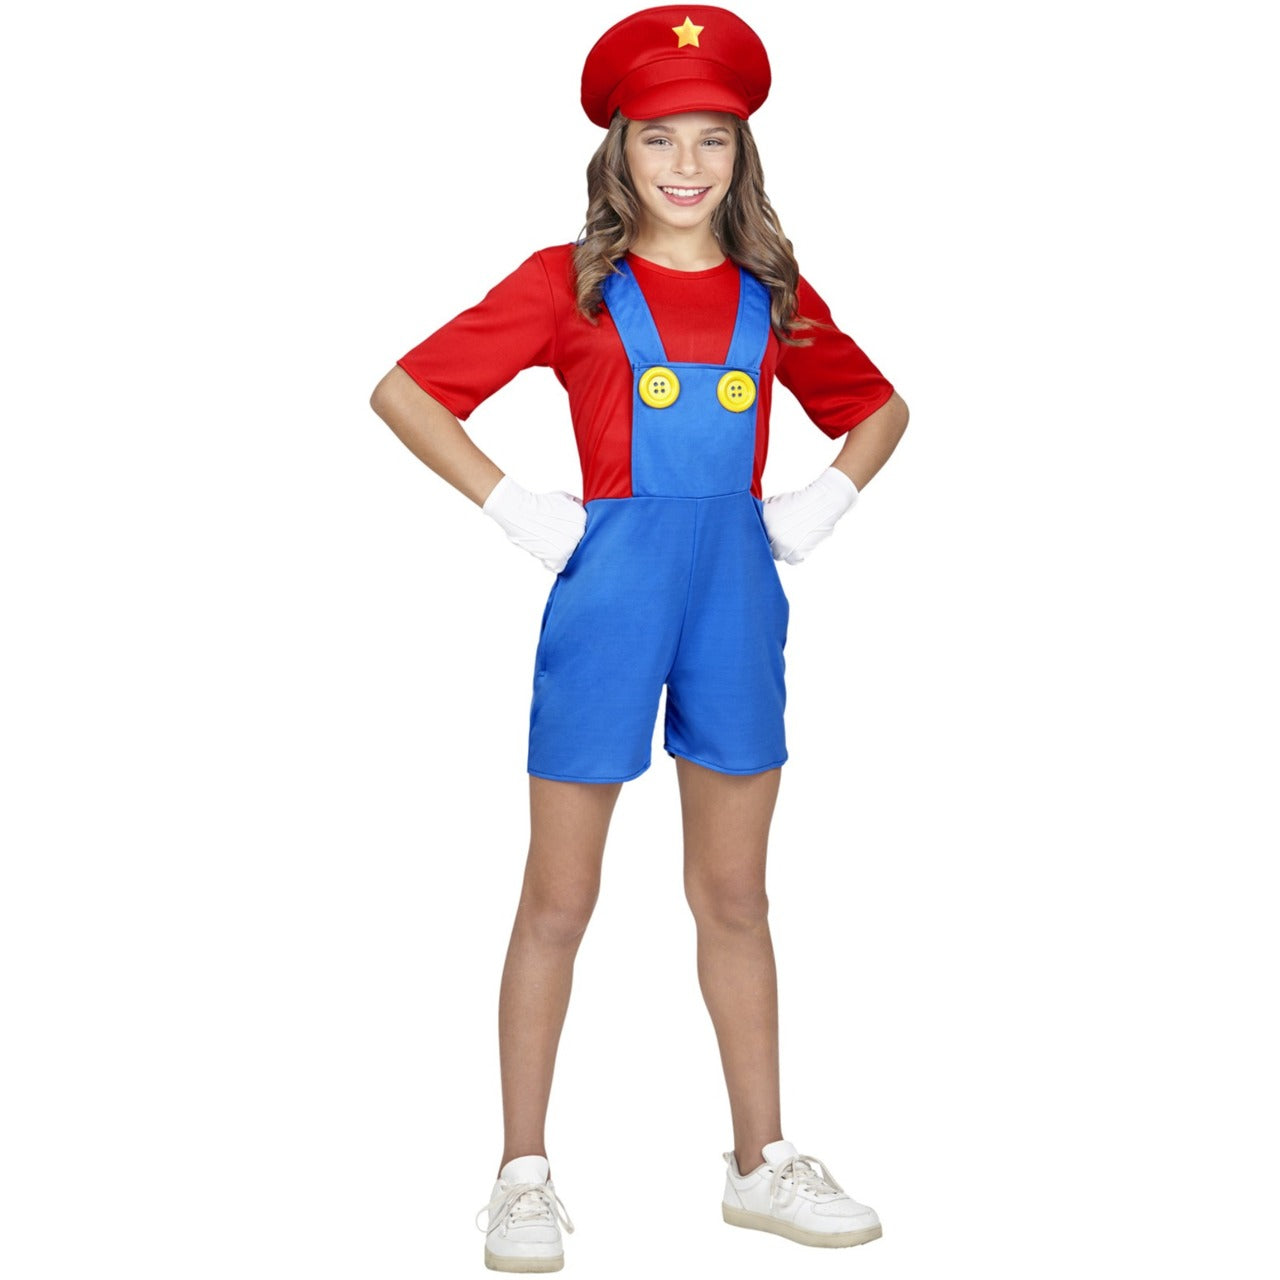 Acquista online il costume di Super Mario Videogame per bambina